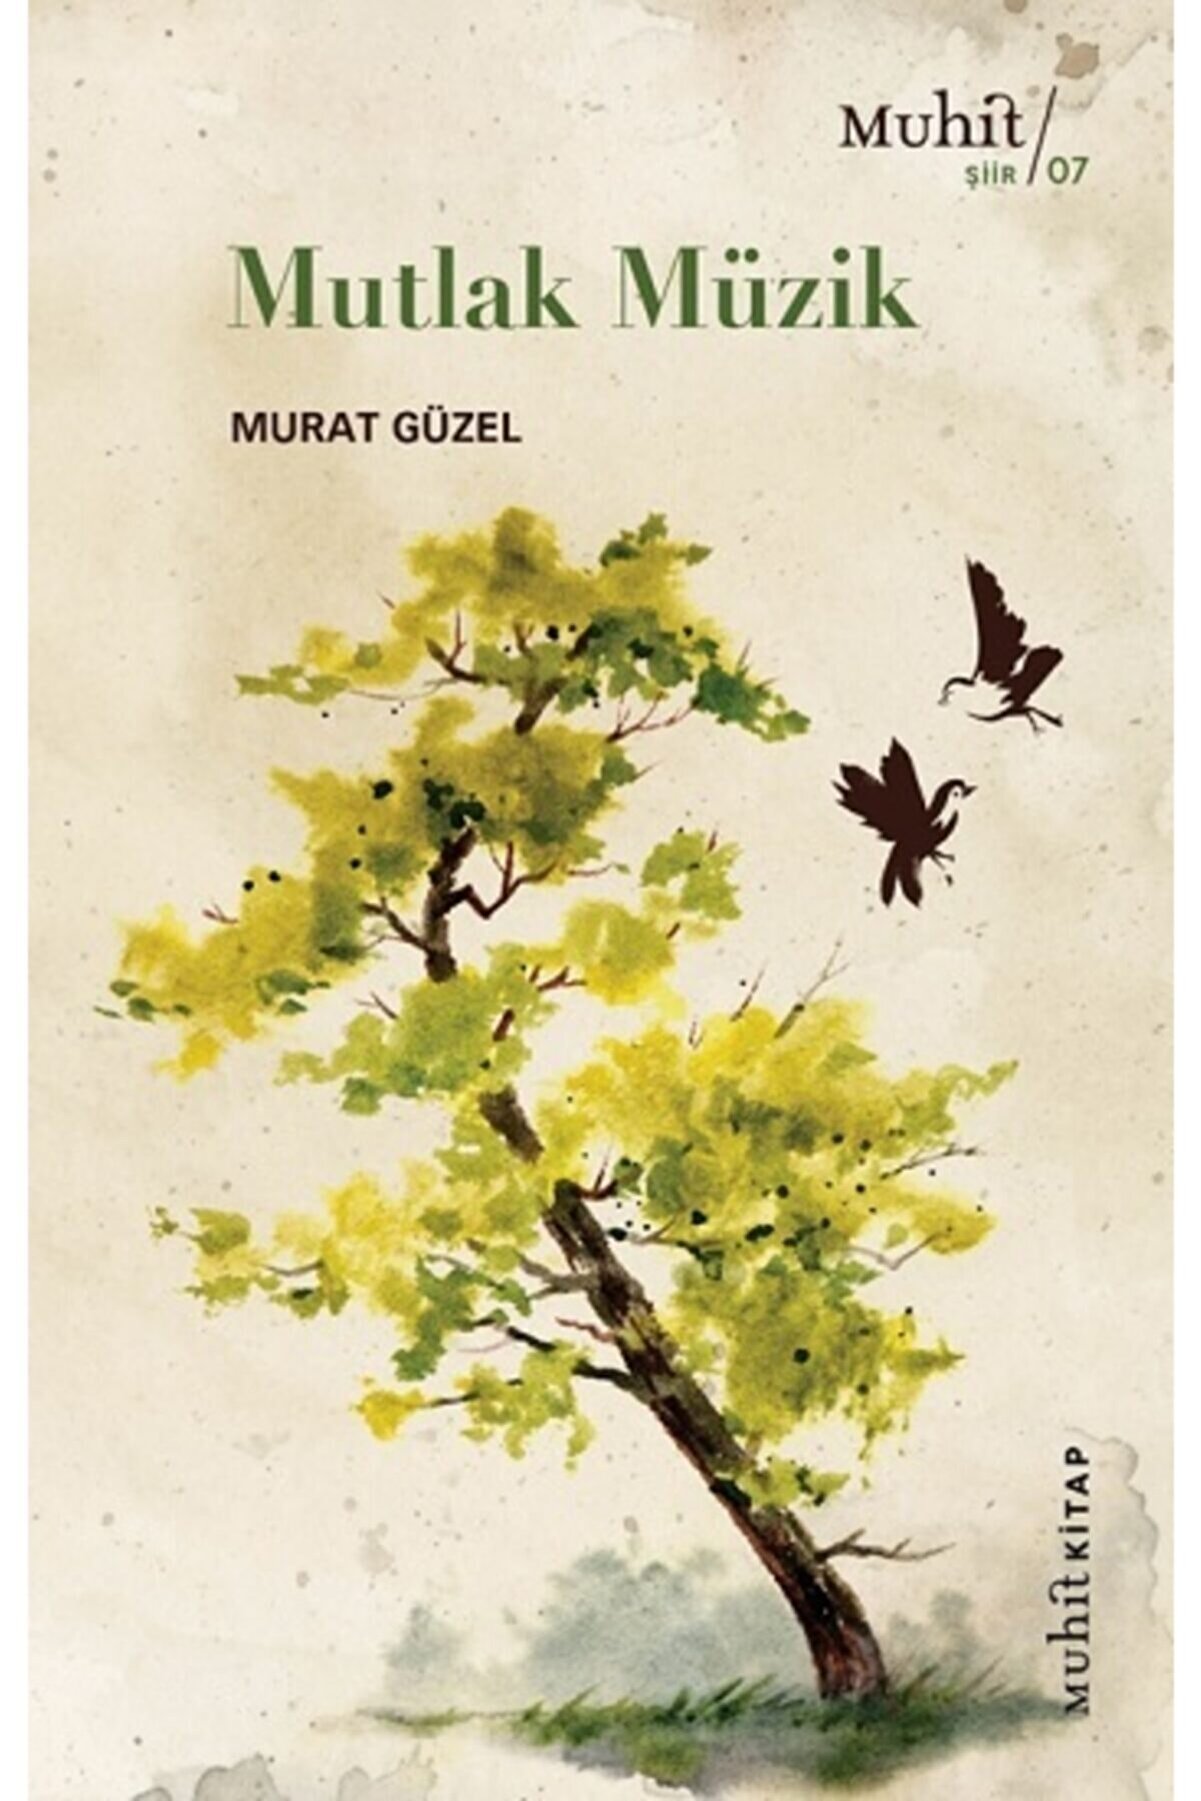 Mutlak Müzik - Murat Güzel - Muhit Kitap Yayınları